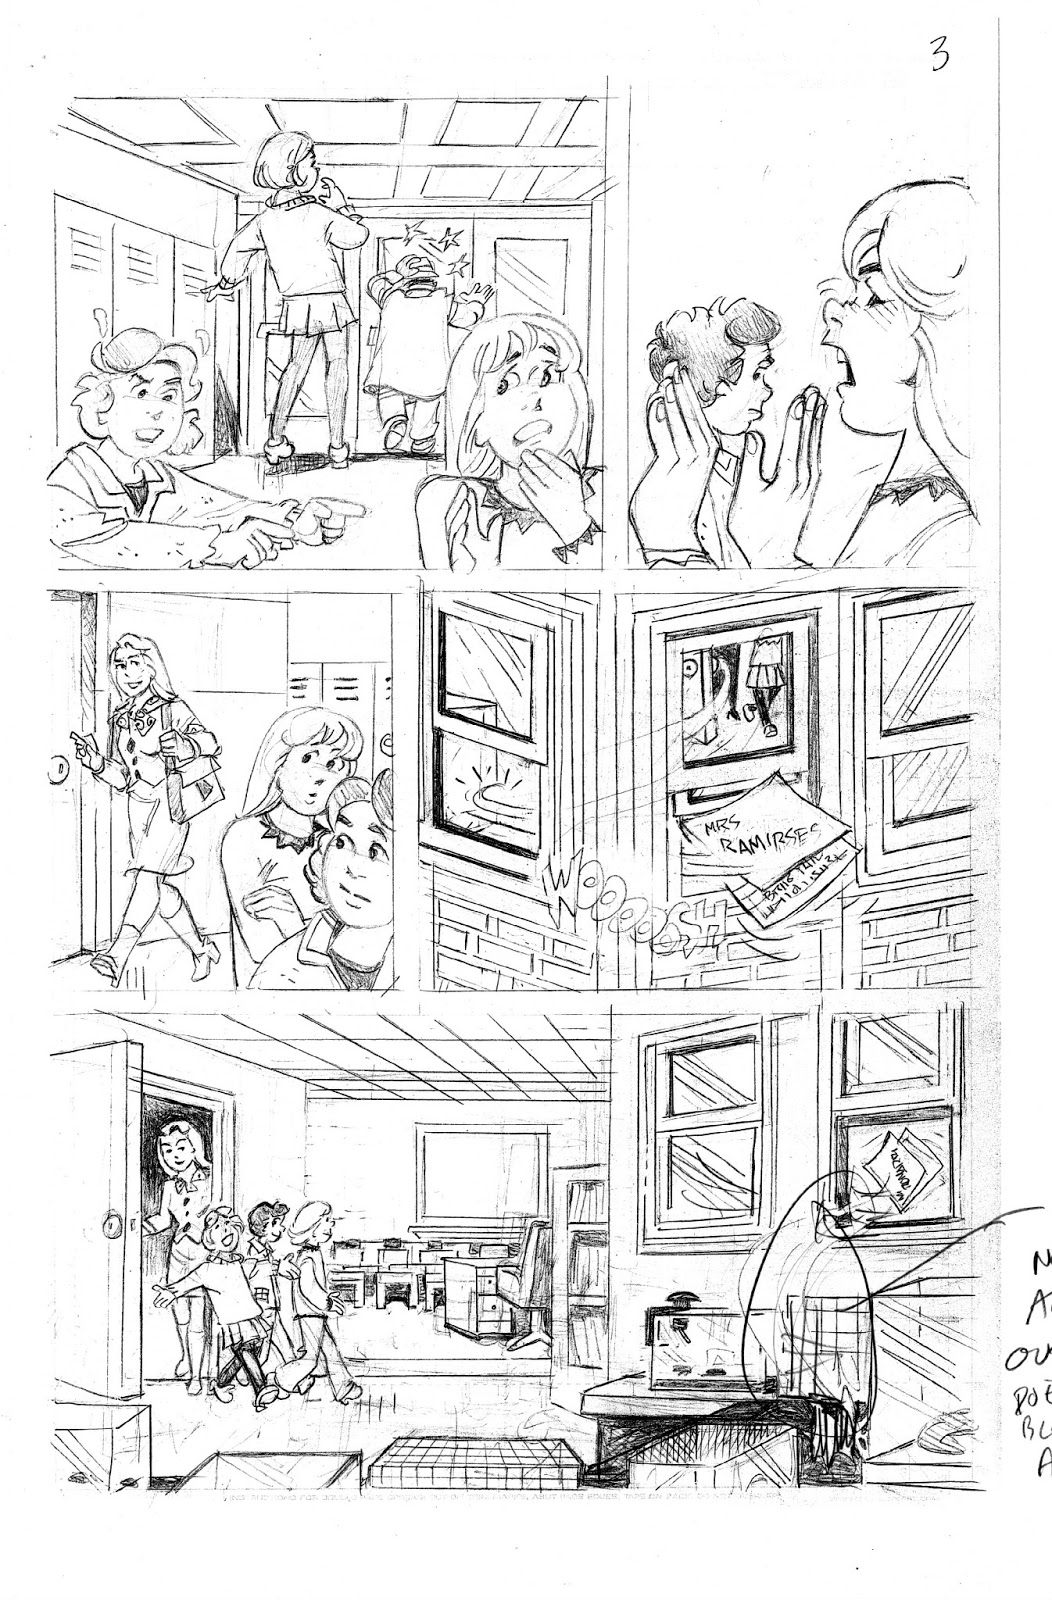 Nancy Drew Sleuth: Nancy Drew Clue Crew Graphic Novel Step-By-Step1052 x 1600